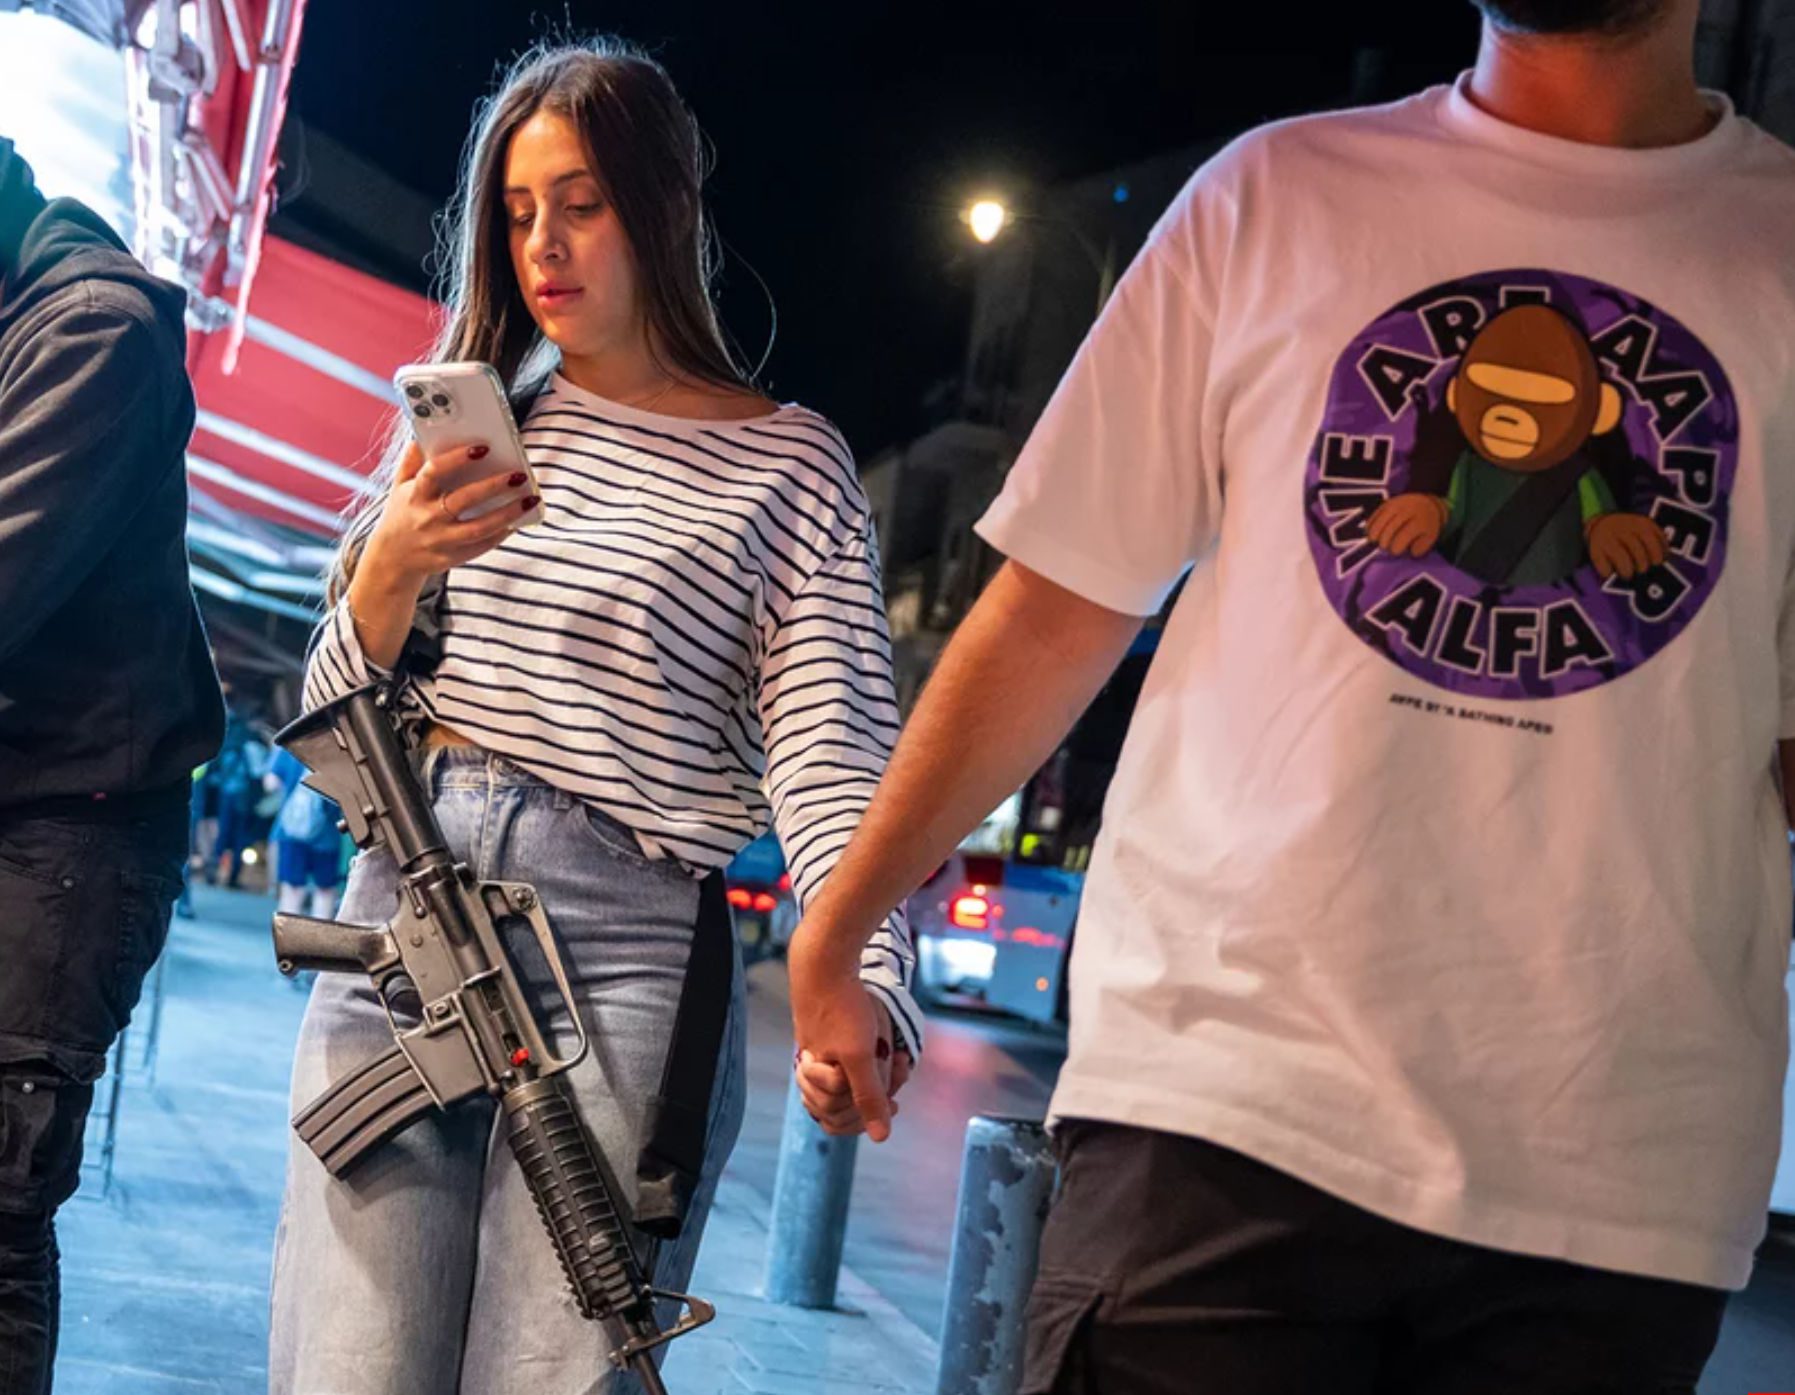 Τρομοκρατημένοι οι κάτοικοι στην Ιερουσαλήμ: Κοπέλα με κινητό και… αυτόματο όπλο σε νυχτερινή βόλτα